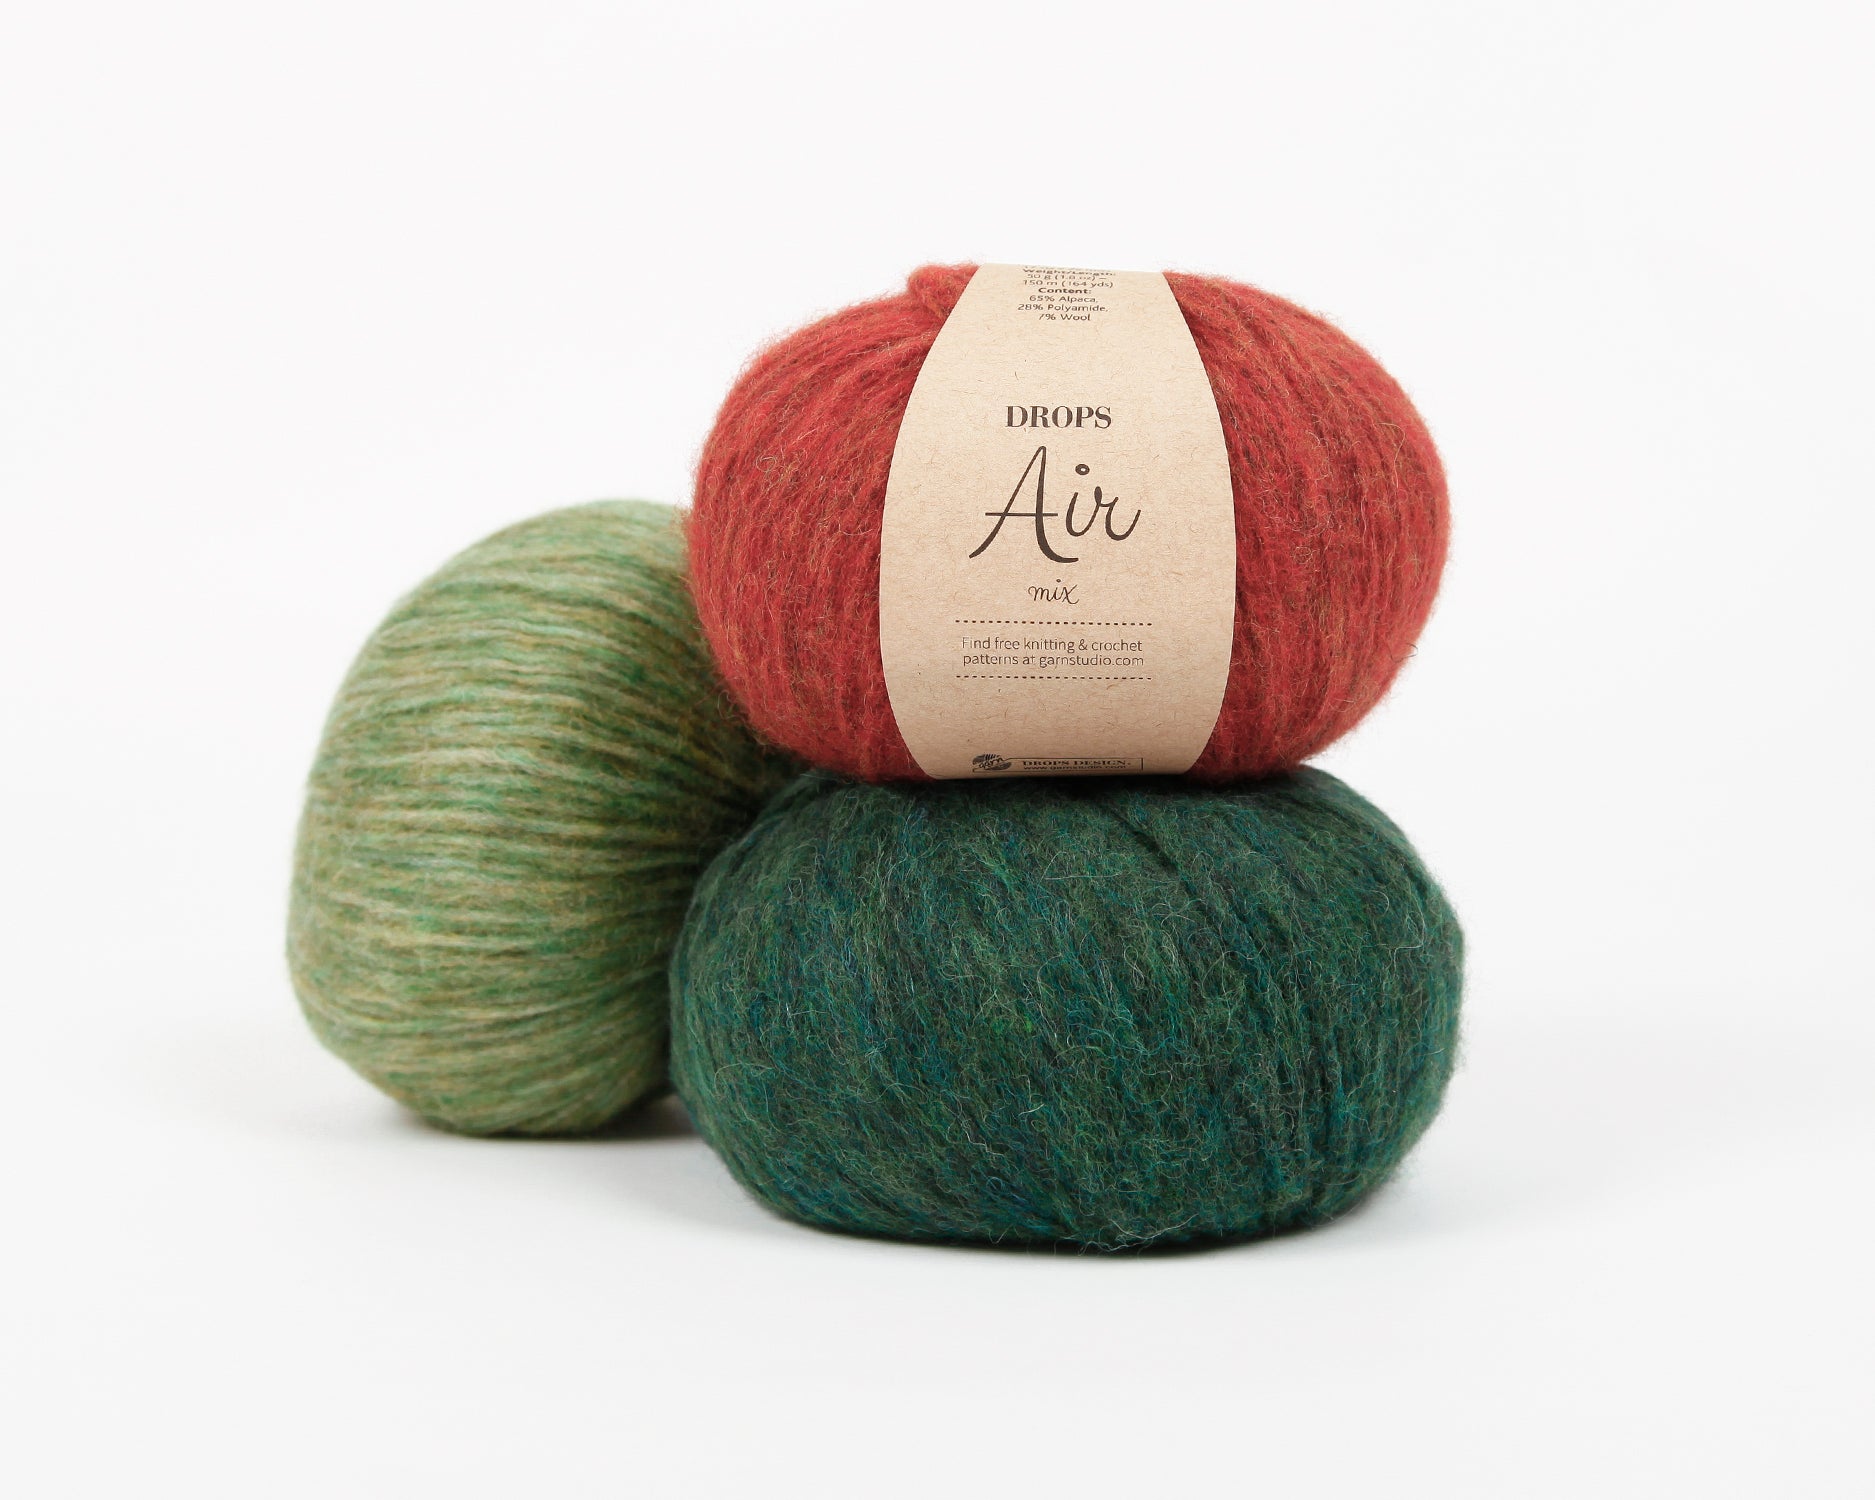 Drops Air – Romni Wools Ltd